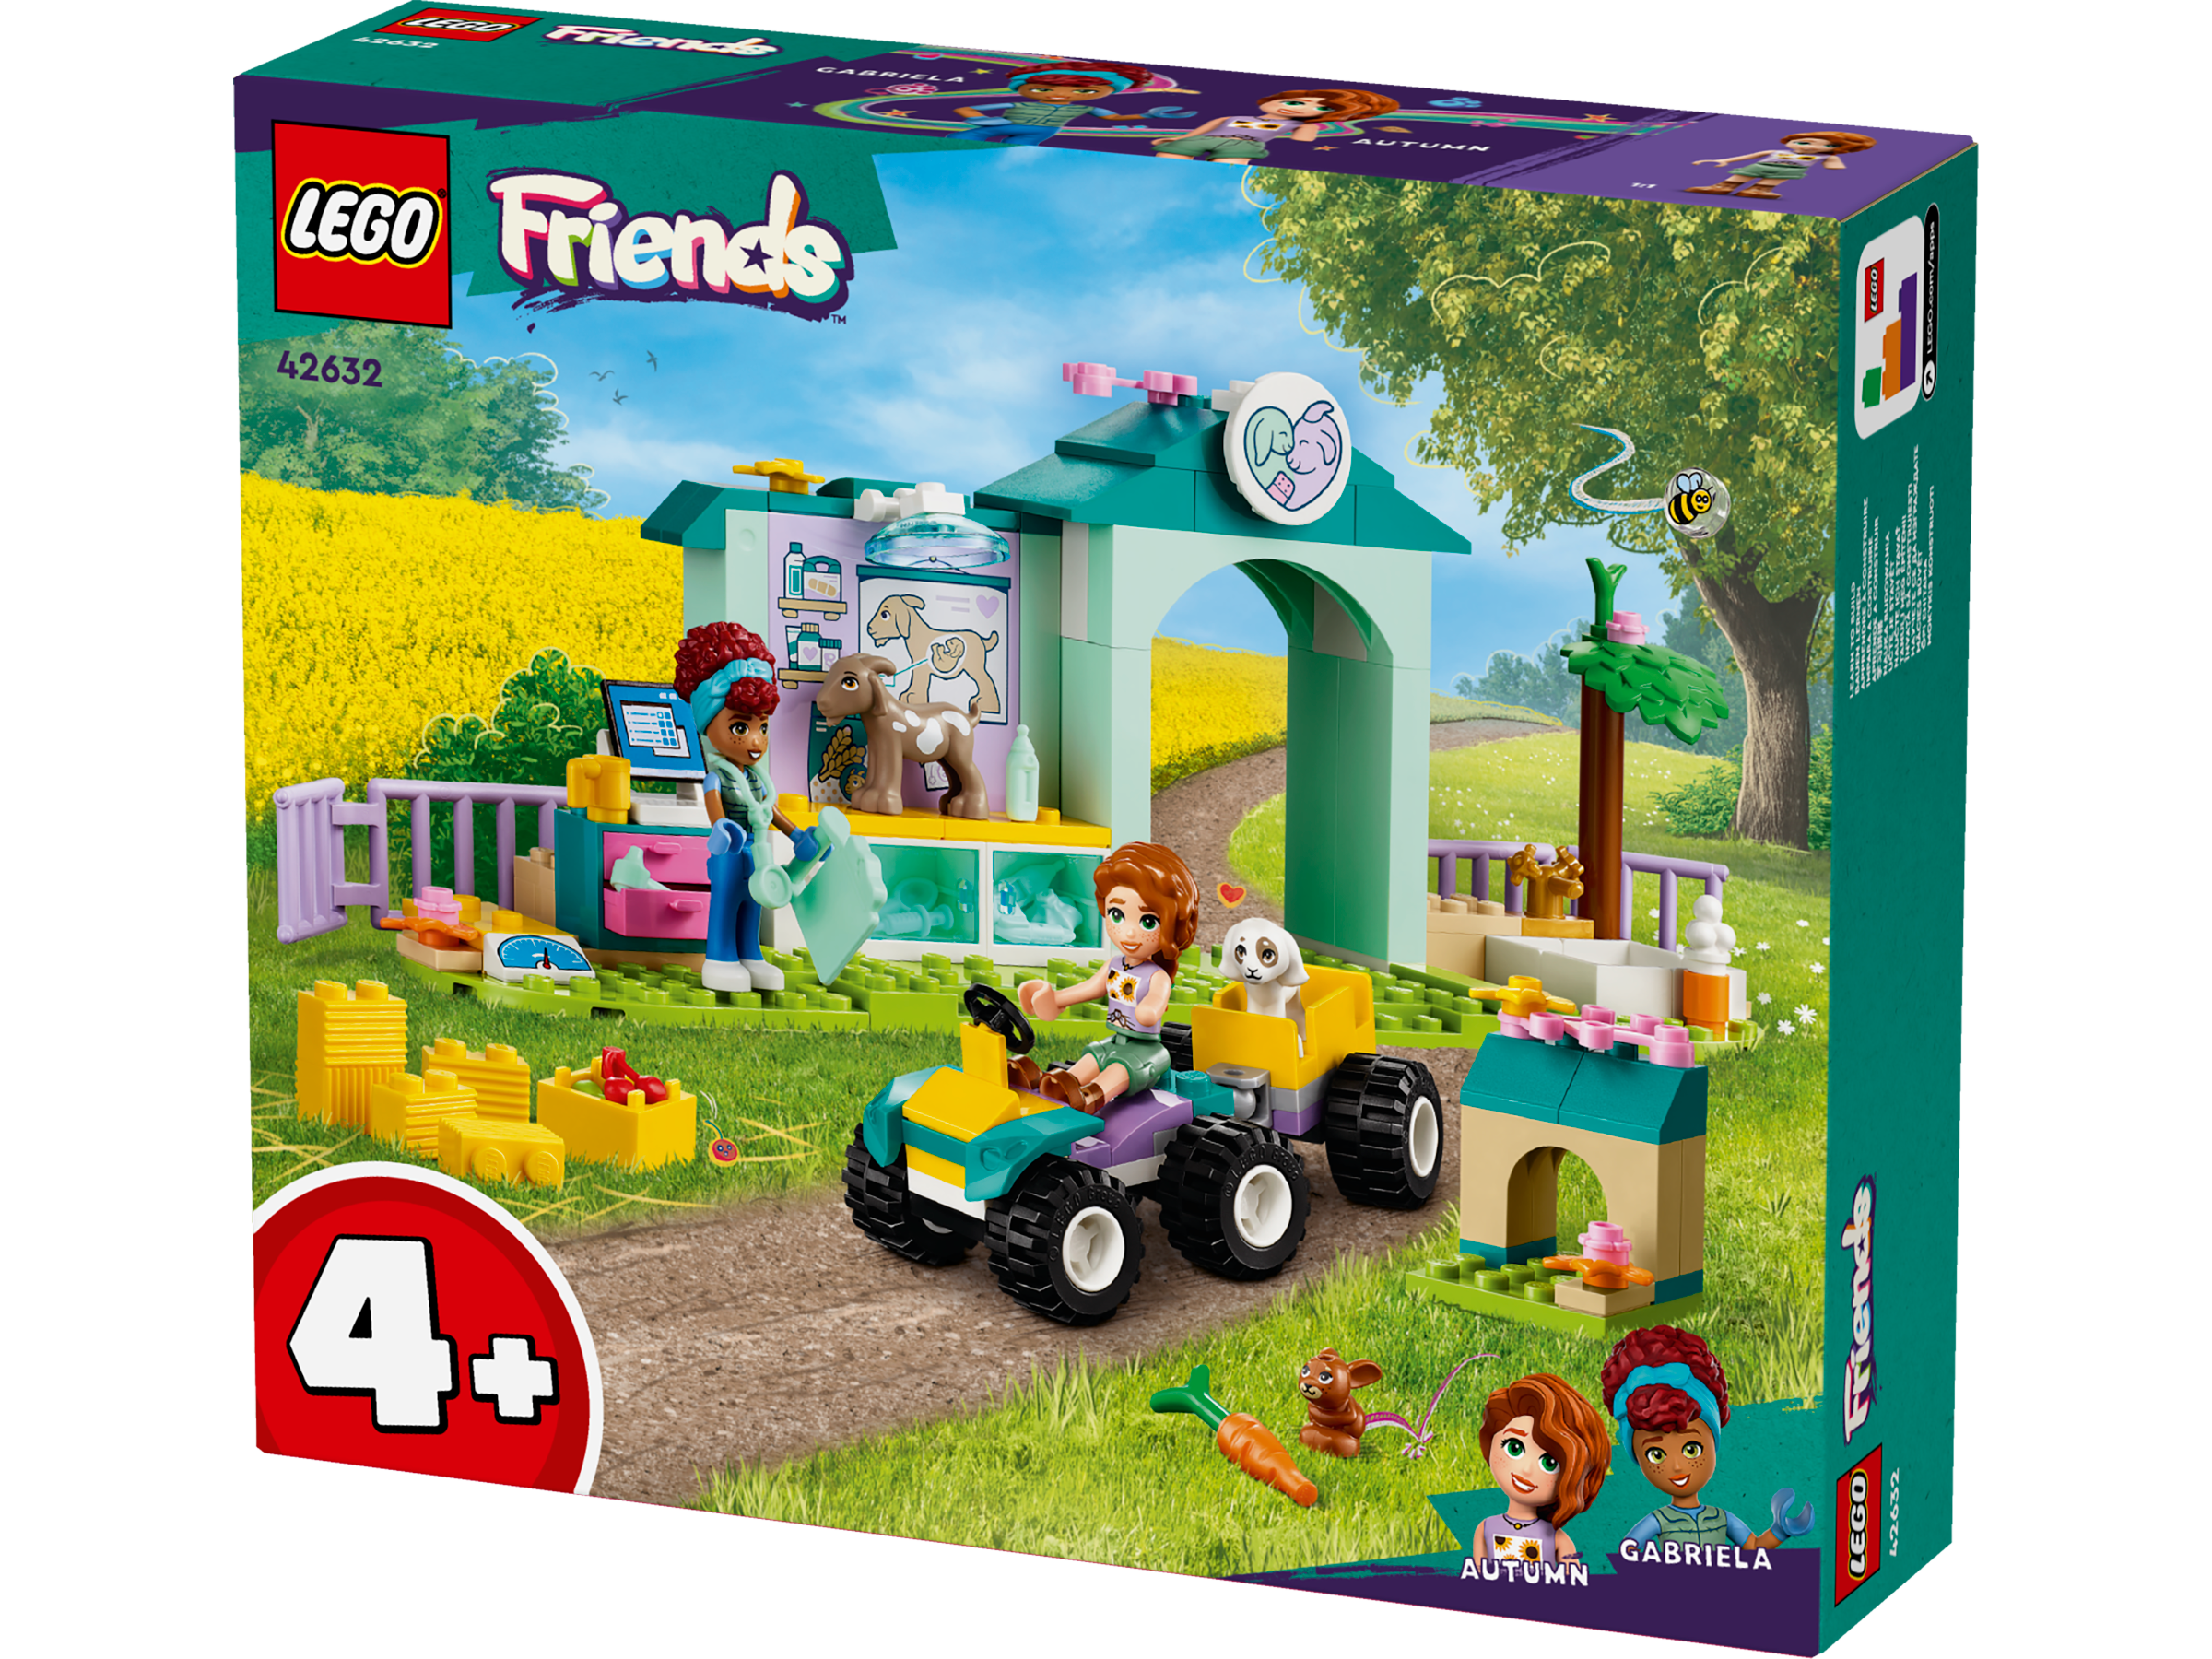 Lego 42632 Farm Animal Vet Clinic